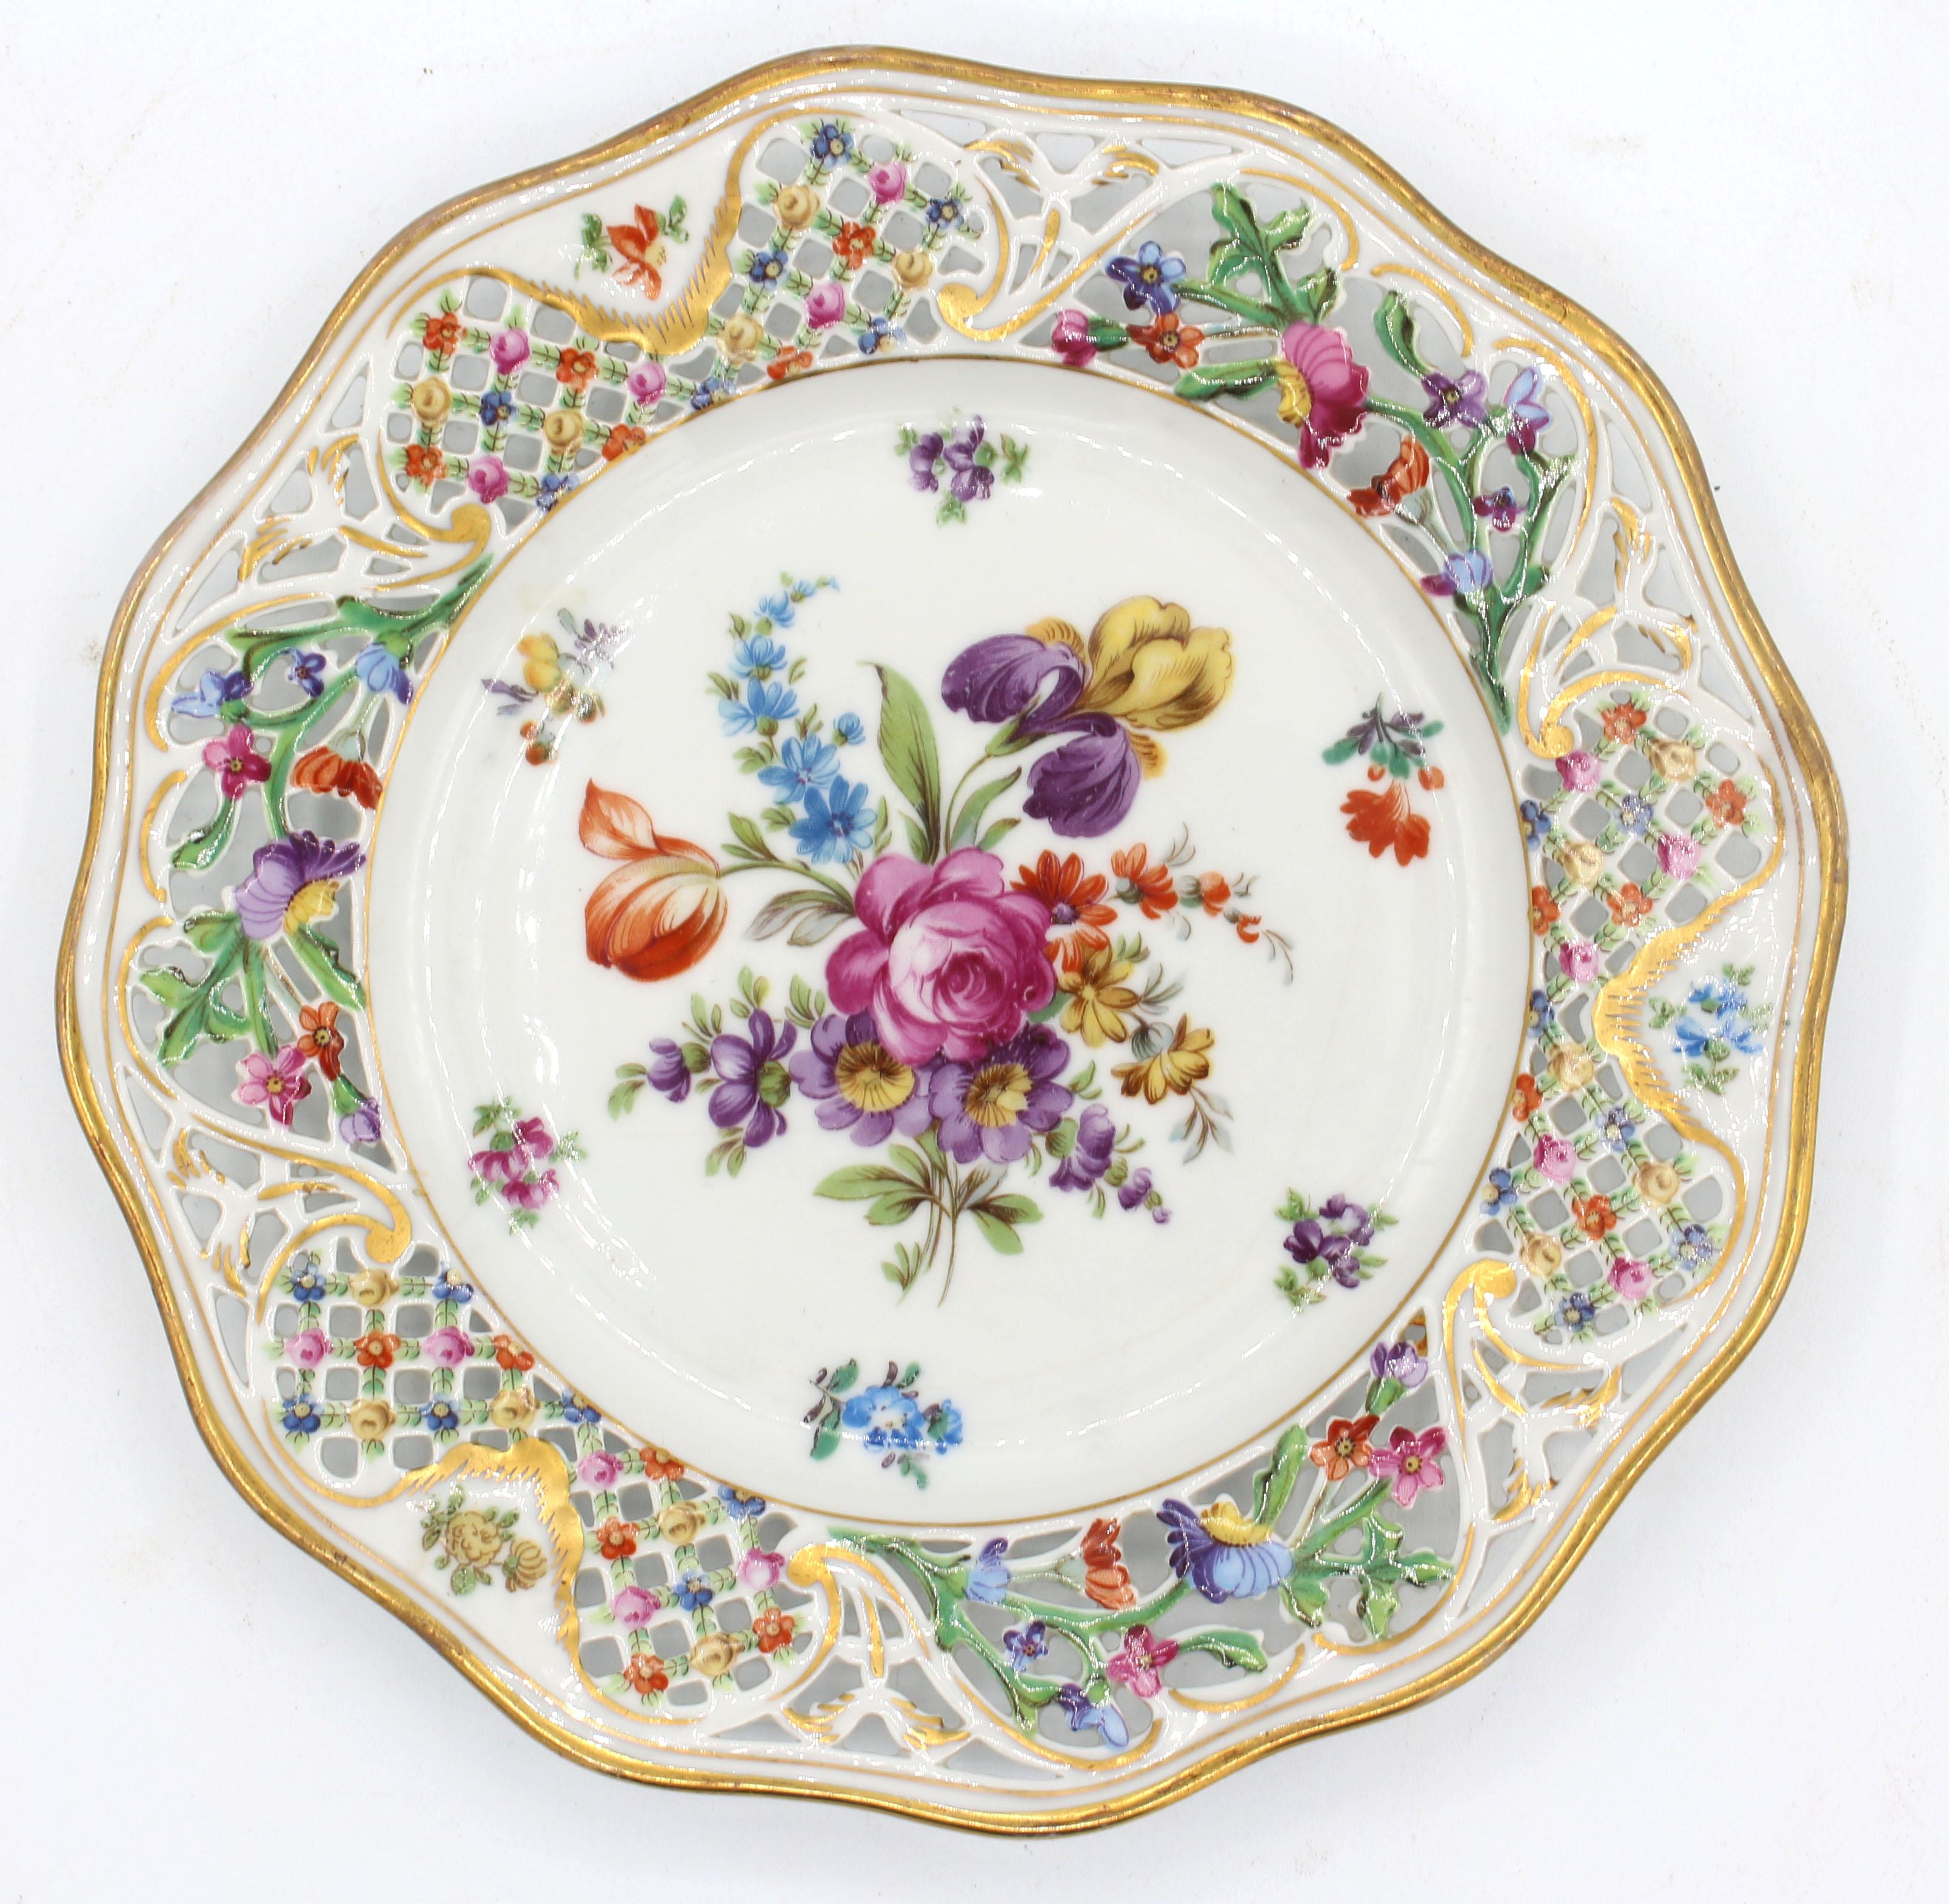 1932-1944 ensemble de 8 assiettes à dessert par Schumann, périodes Dresde et Bavière. Superbes gerbes de fleurs peintes à la main avec de larges bordures florales réticulées et ondulées. Une ligne de glaçage.
8 3/8